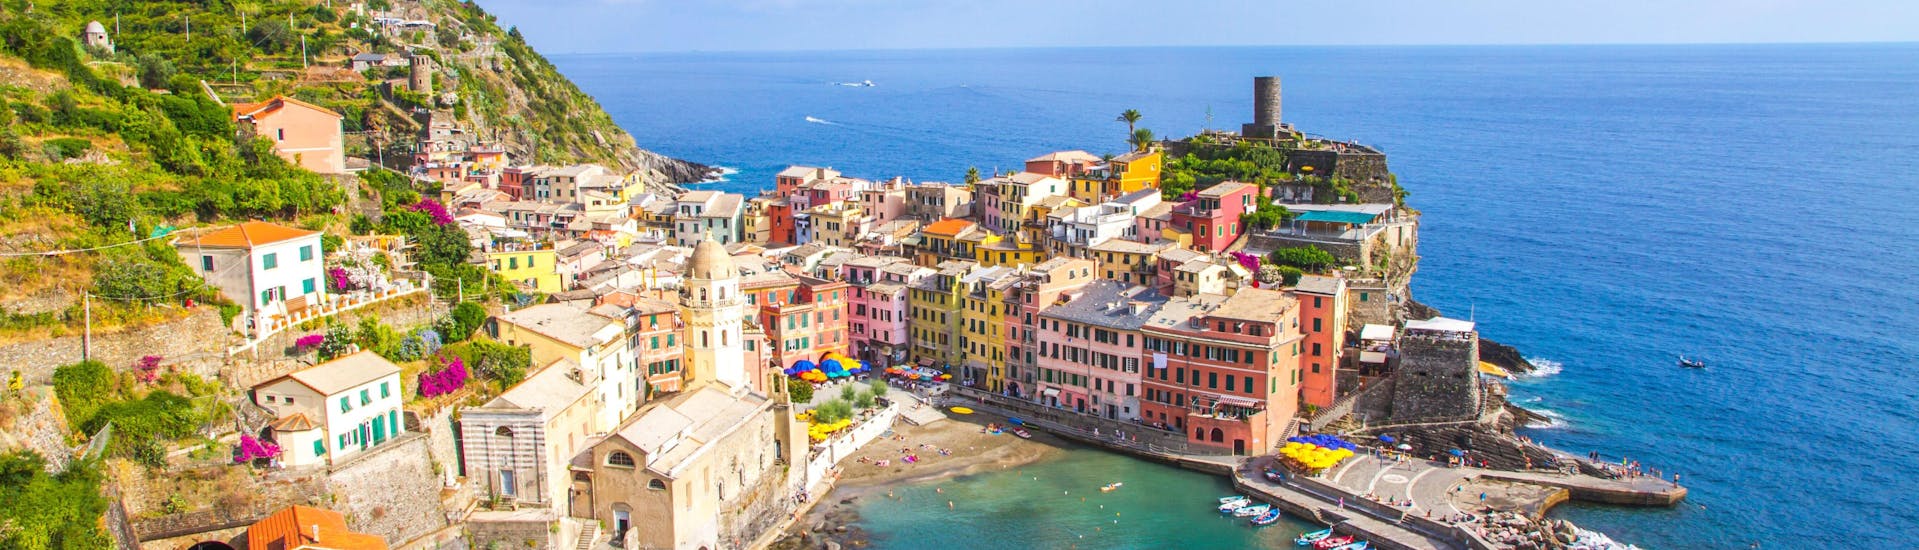 Vista de Vernazza, un destino popular para los paseos en barco en Cinque Terre.